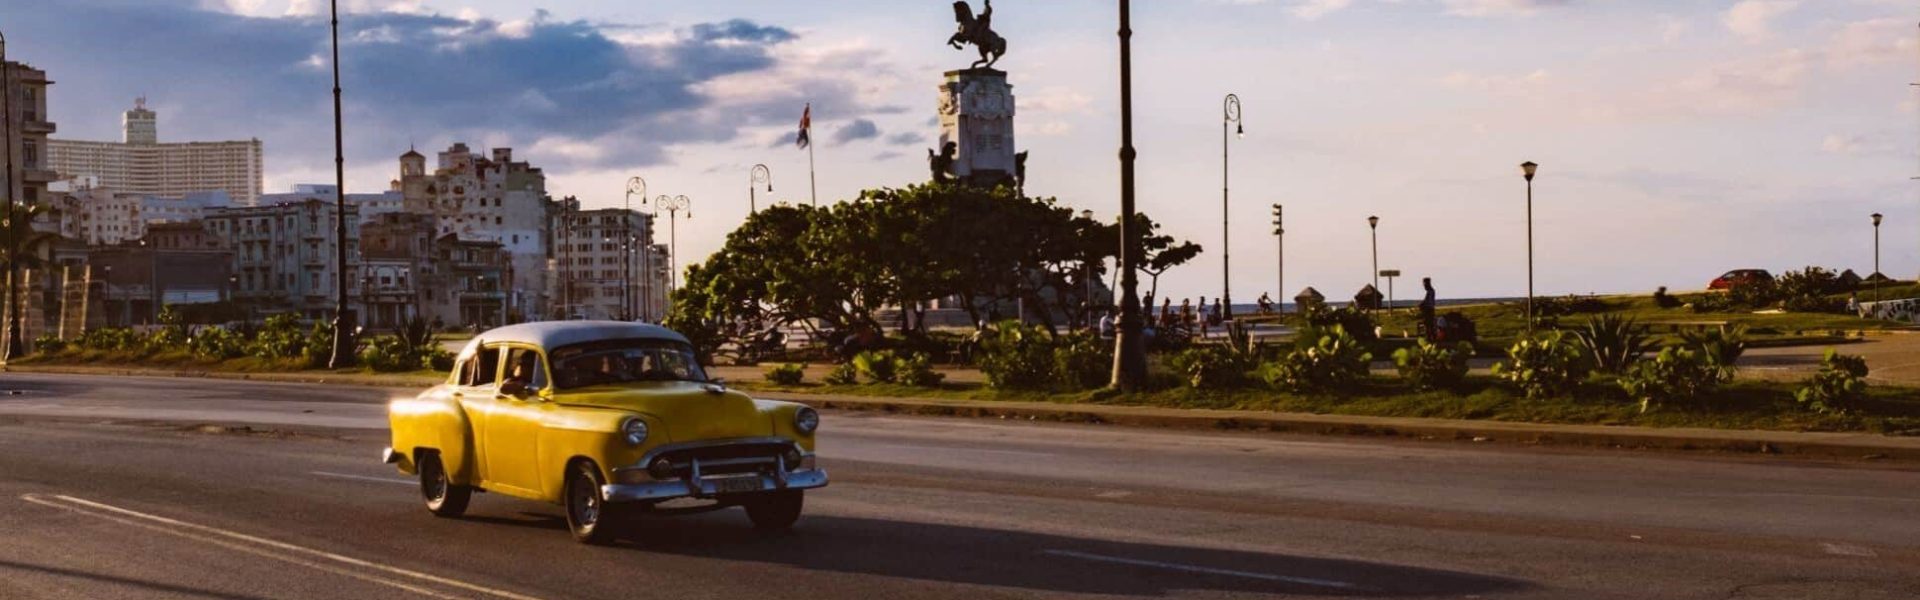 Coche clásico de color amarillo por la carretera en Cuba